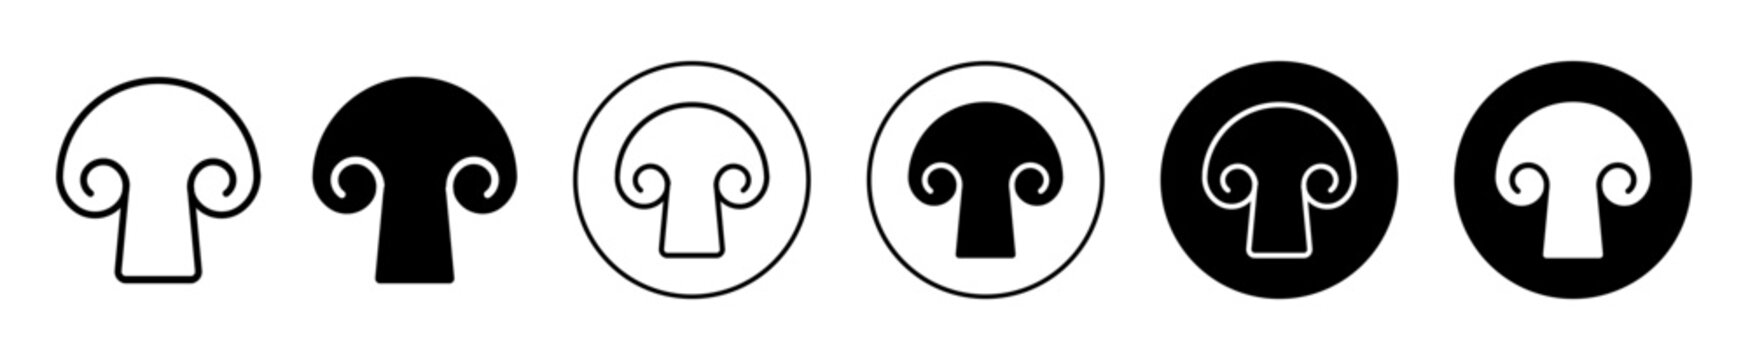 mushroom icon. organic and natural mushroom top or cap symbol set. Vegan diet food of fungus vector sign. Mushroom fungi line logo